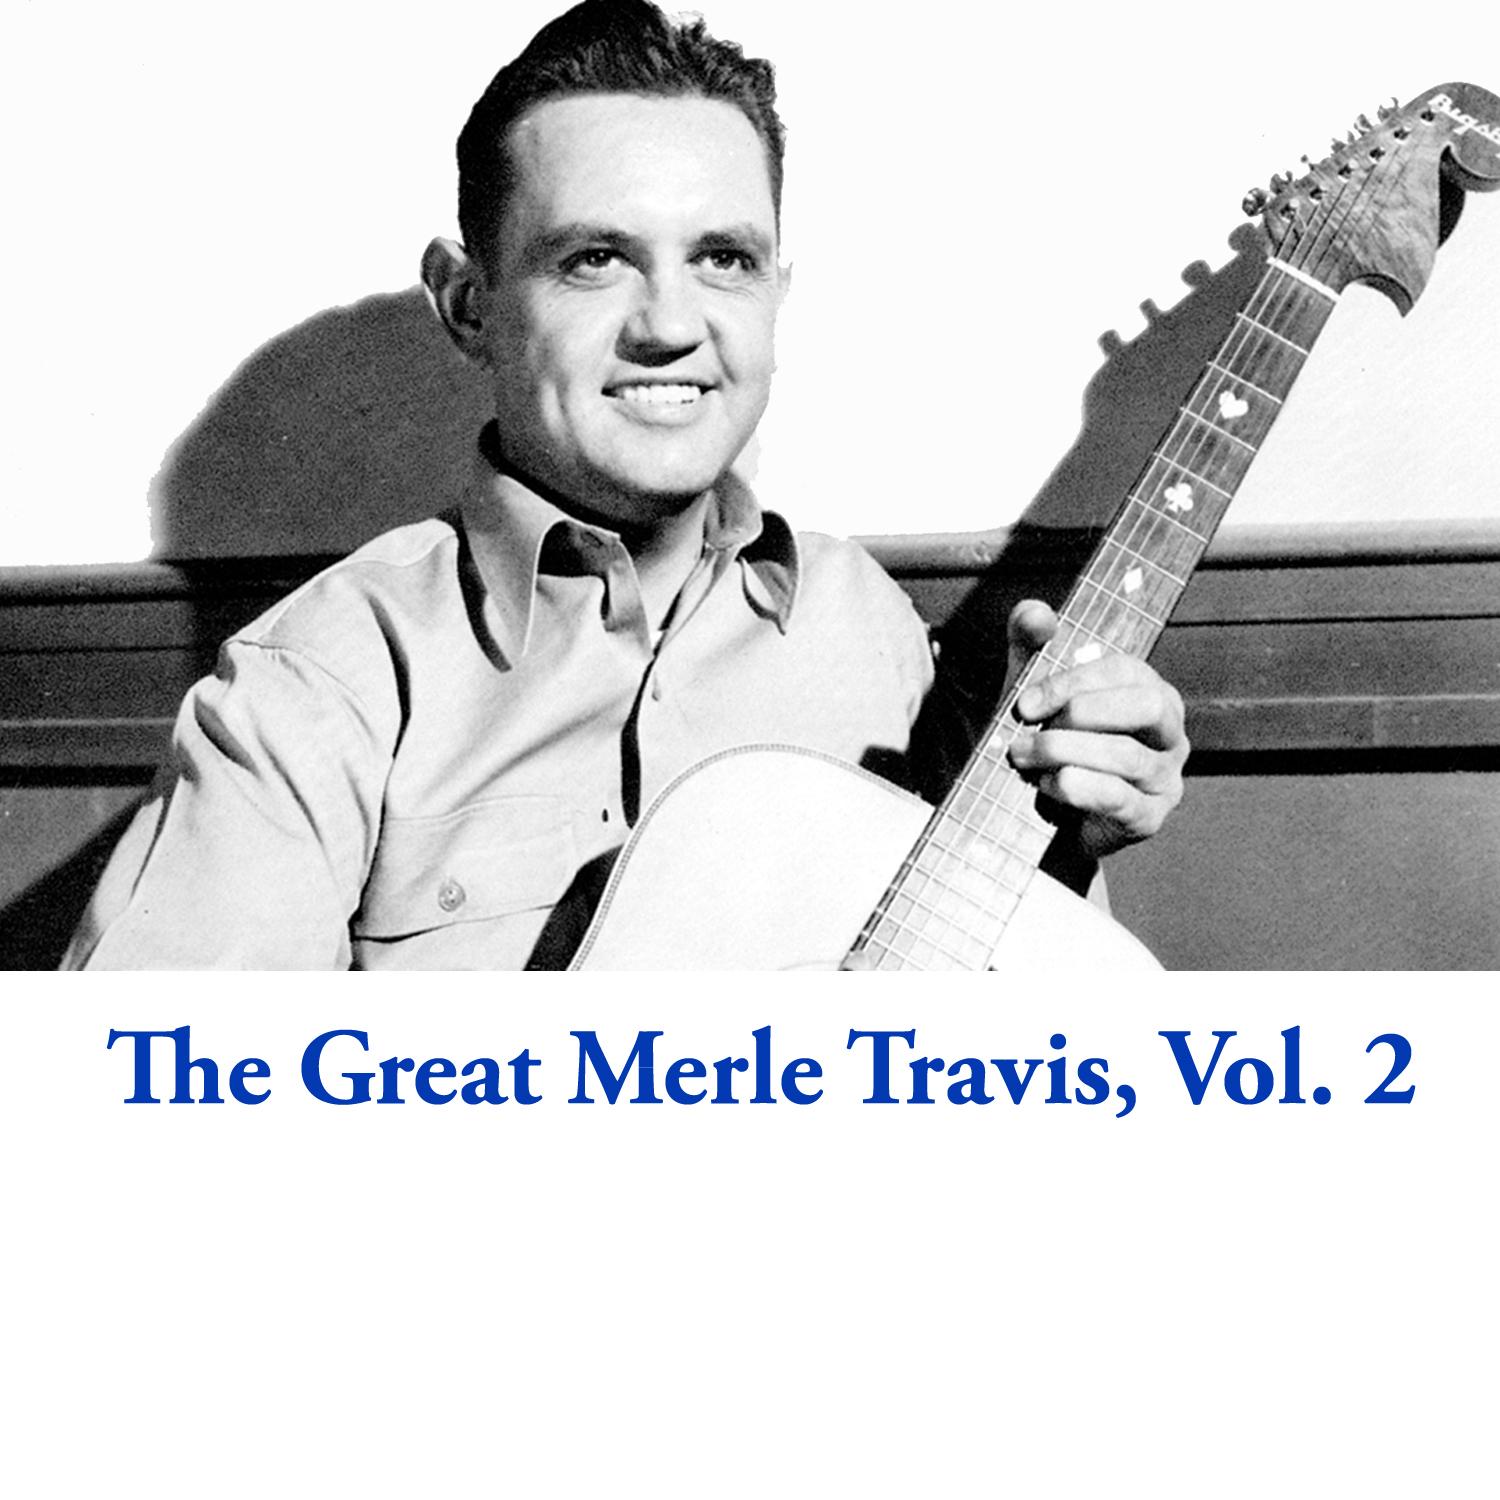 The Great Merle Travis, Vol. 2